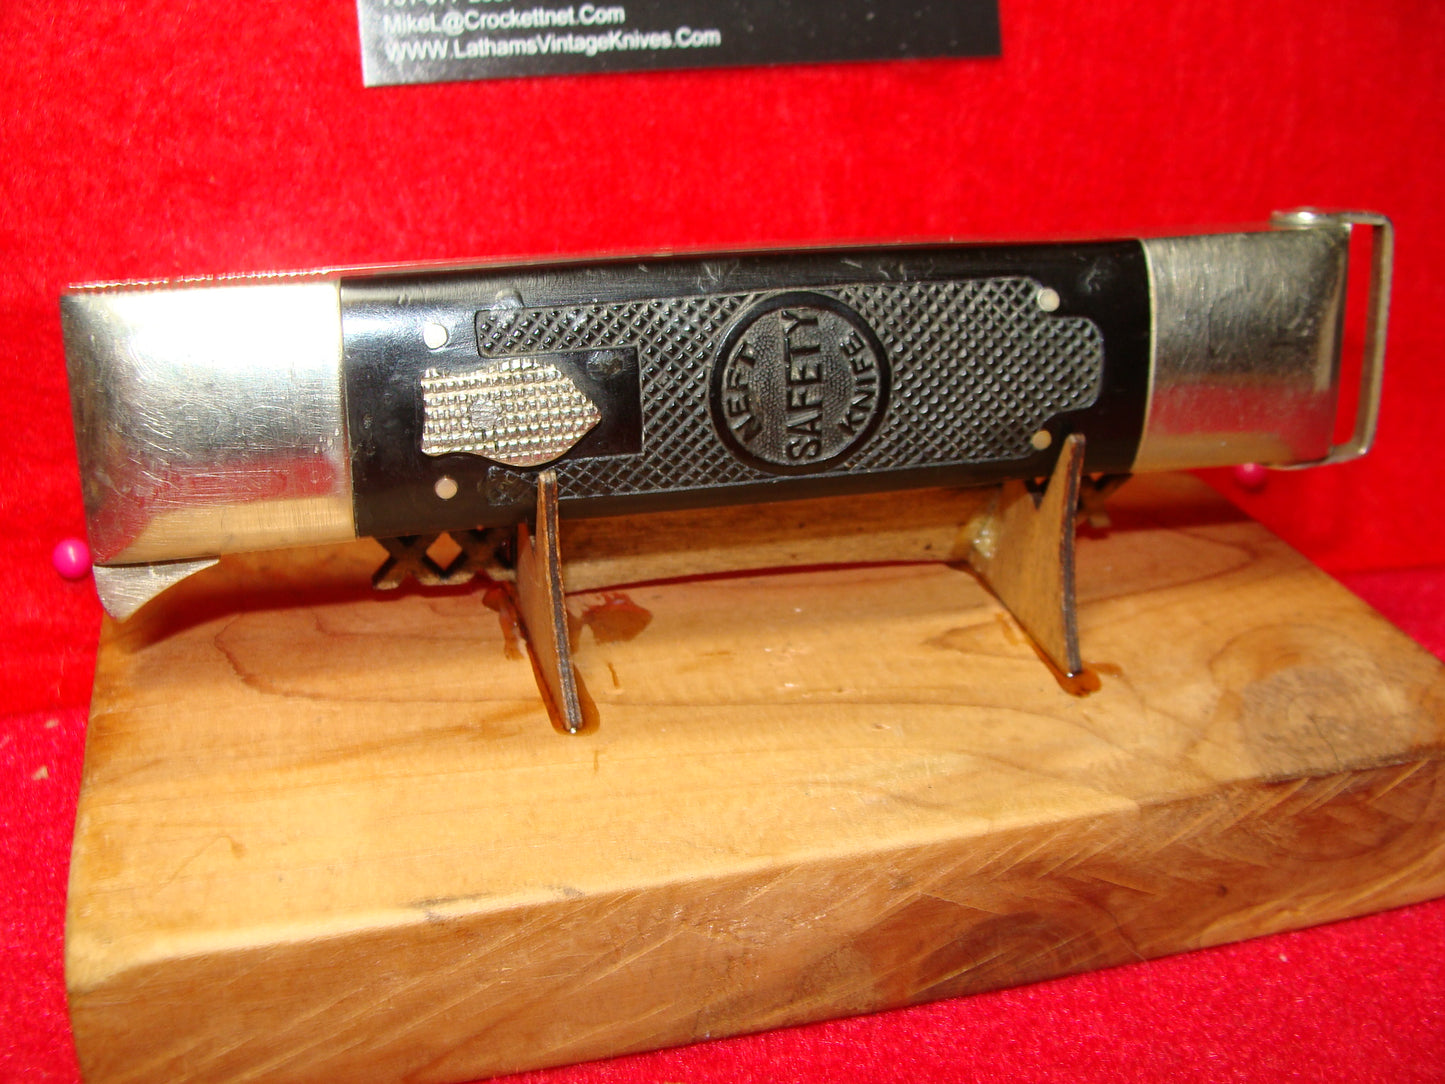 NEFT SAFETY IMPROVED HUNTER 1925-35 HIDDEN BLADE VINTAGE AMERICAN MANUAL KNIFE BLACK PLASTIC HANDLES